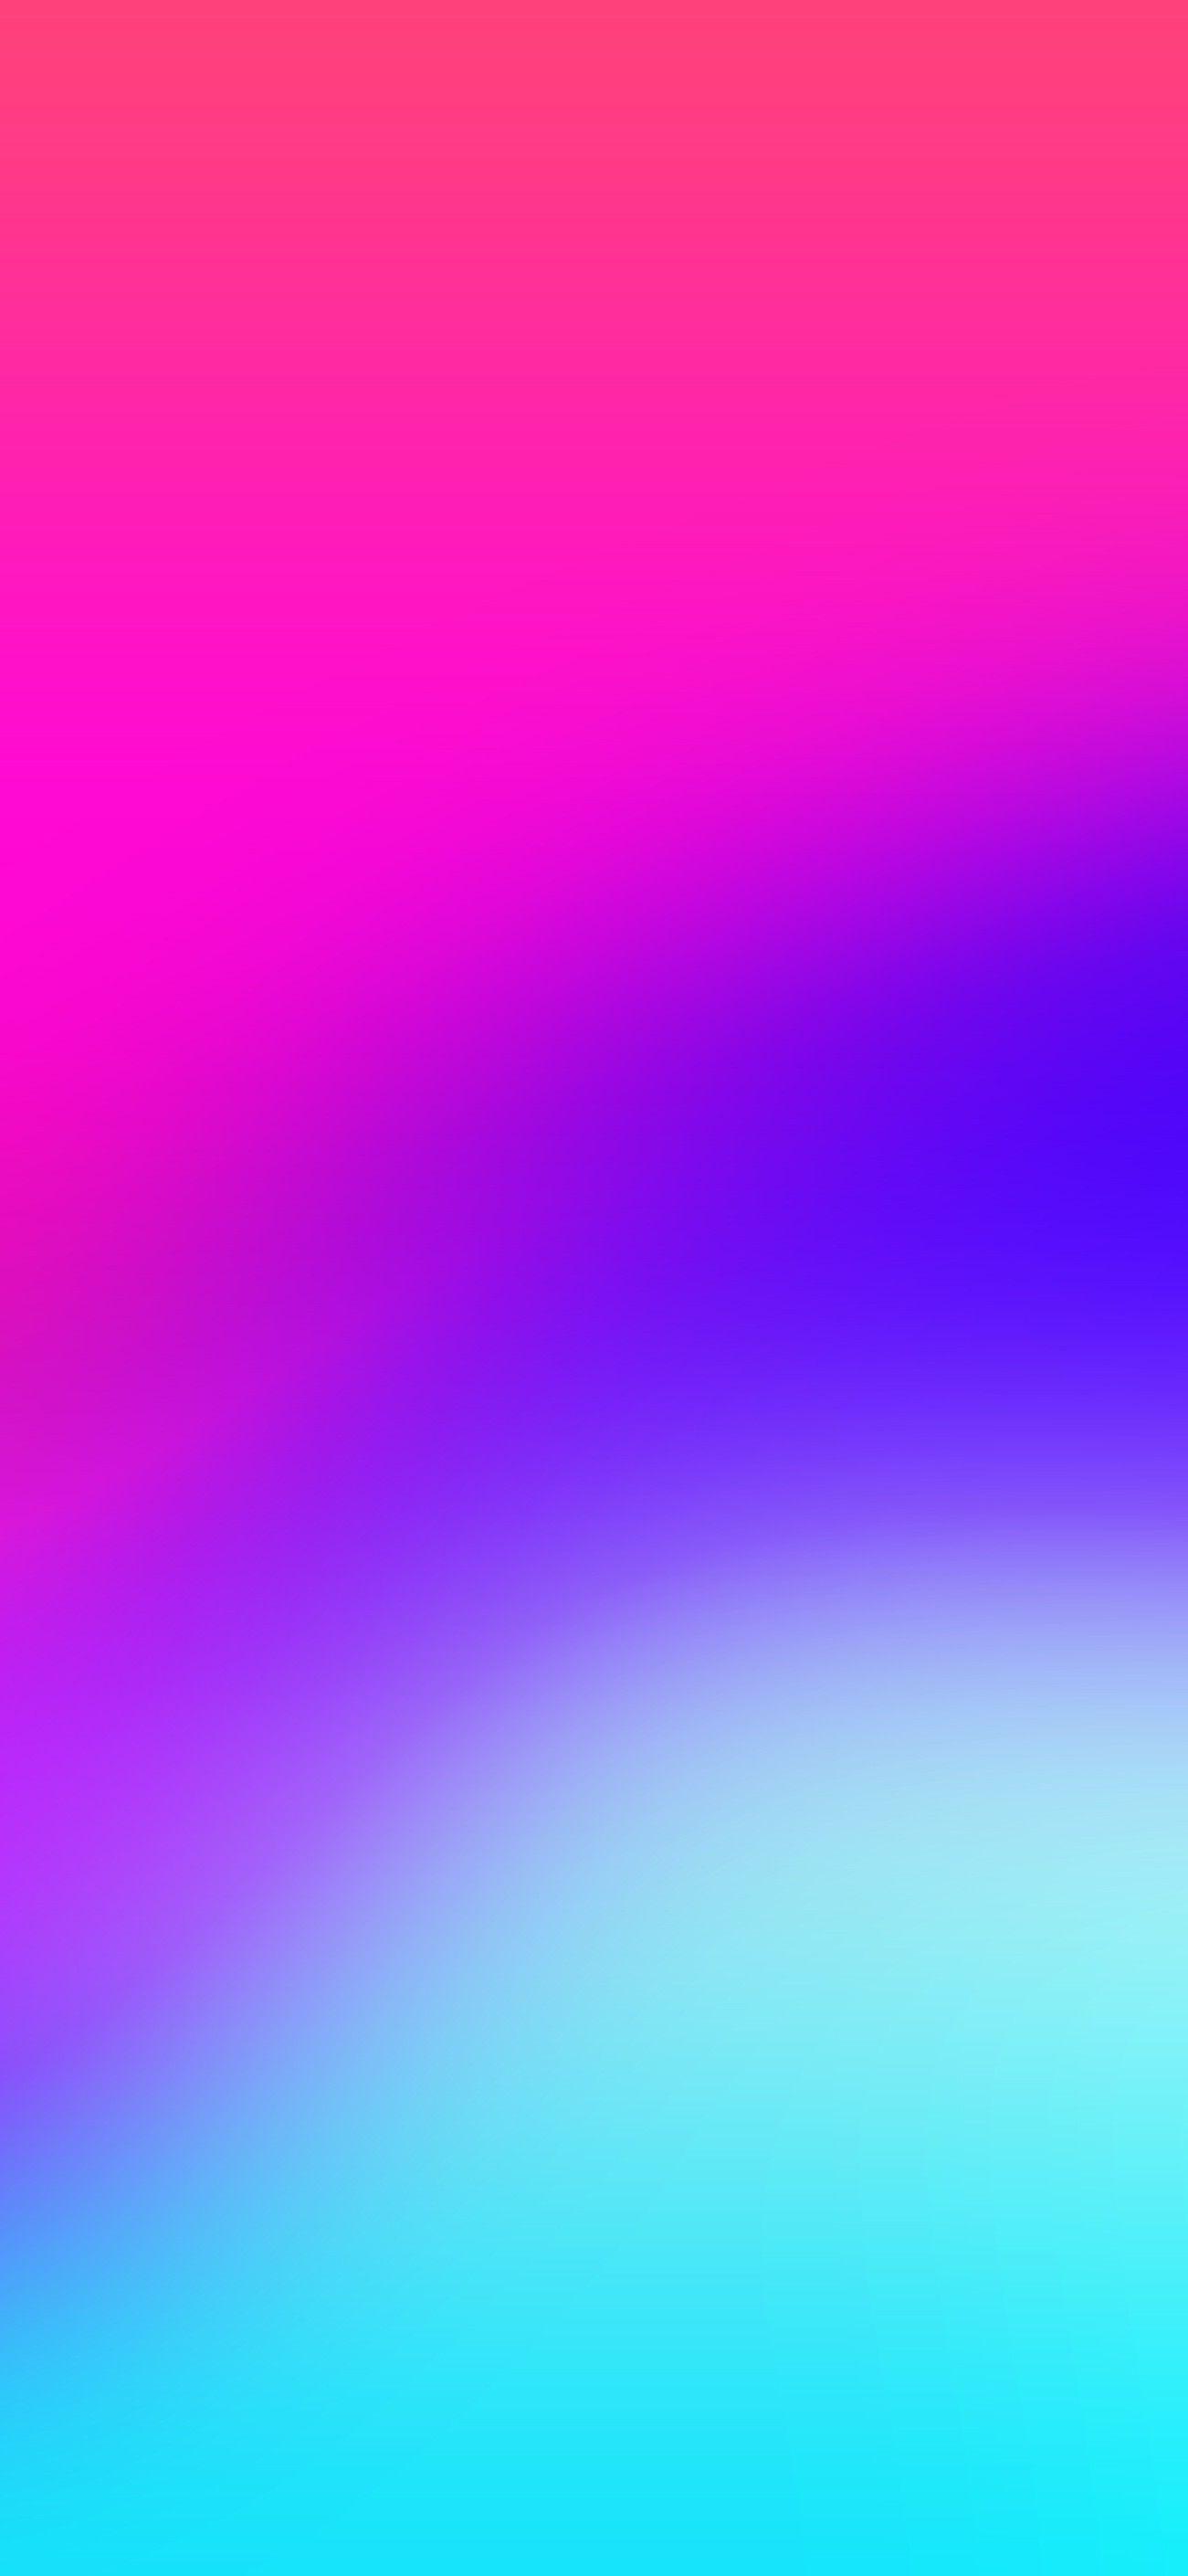 1301x2820 iOS 11, iPhone X, hồng, xanh lam, sạch sẽ, đơn giản, trừu tượng, táo